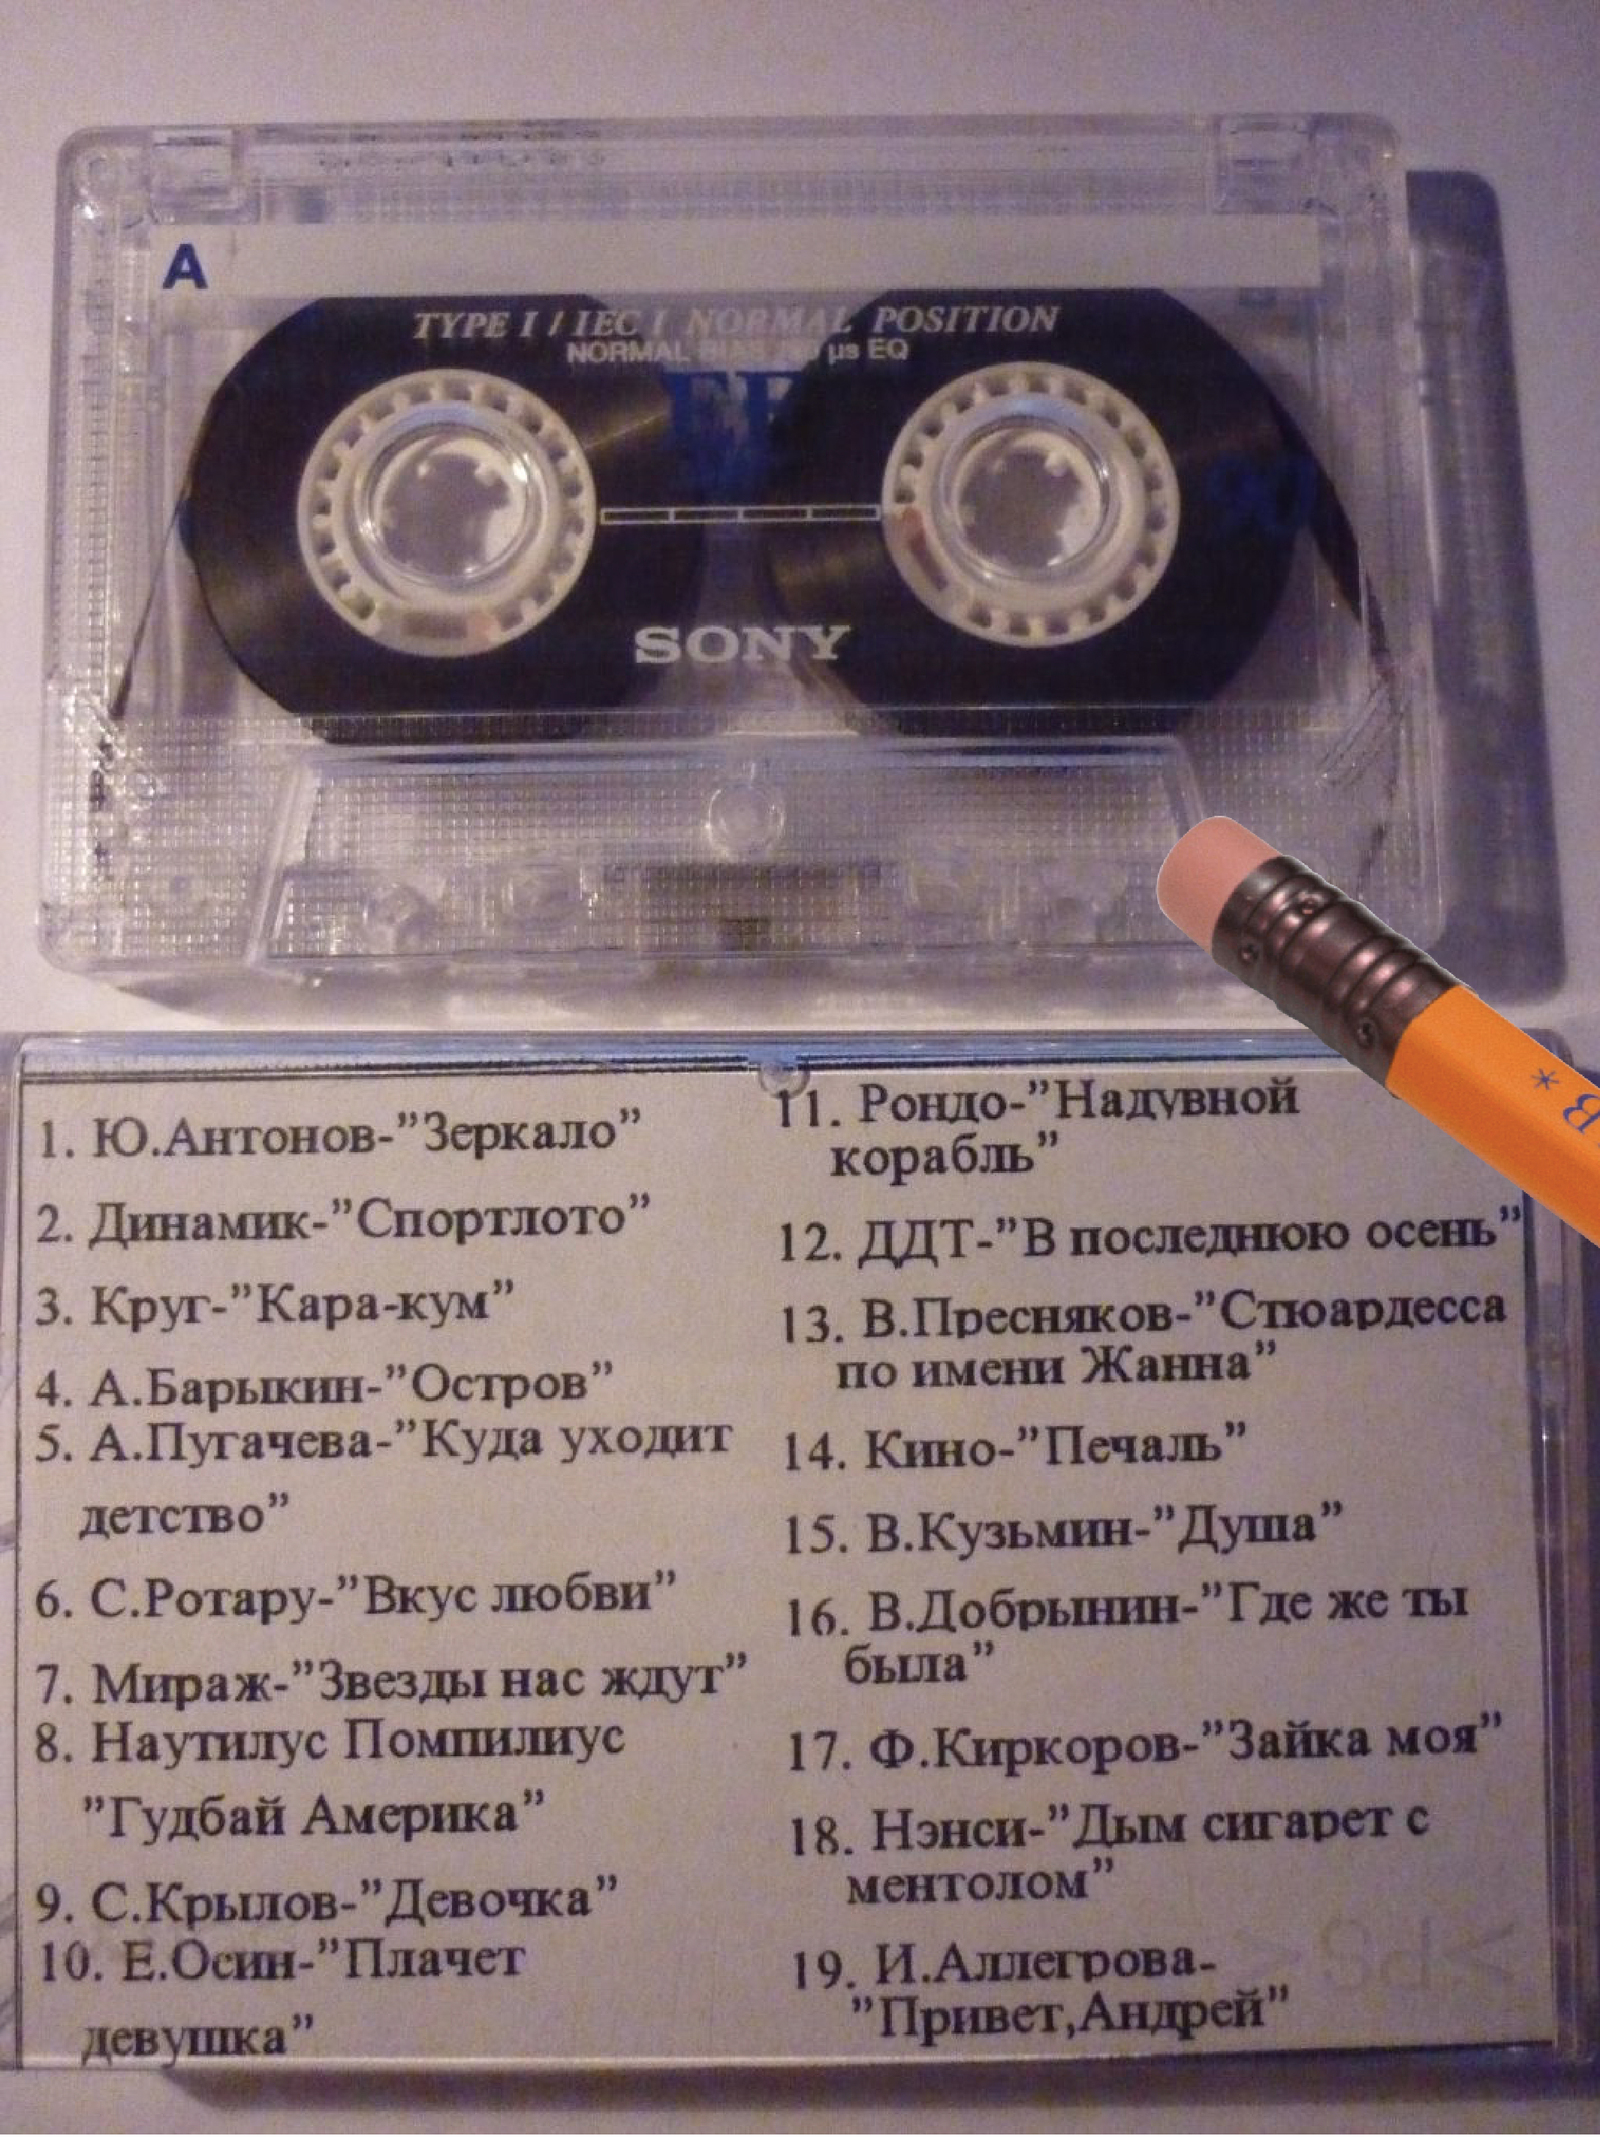 Зеркало антонов текст. Кассетный аудио 90х. Аудиокассеты сборники. Кассеты с песнями. Советские кассеты с записью.